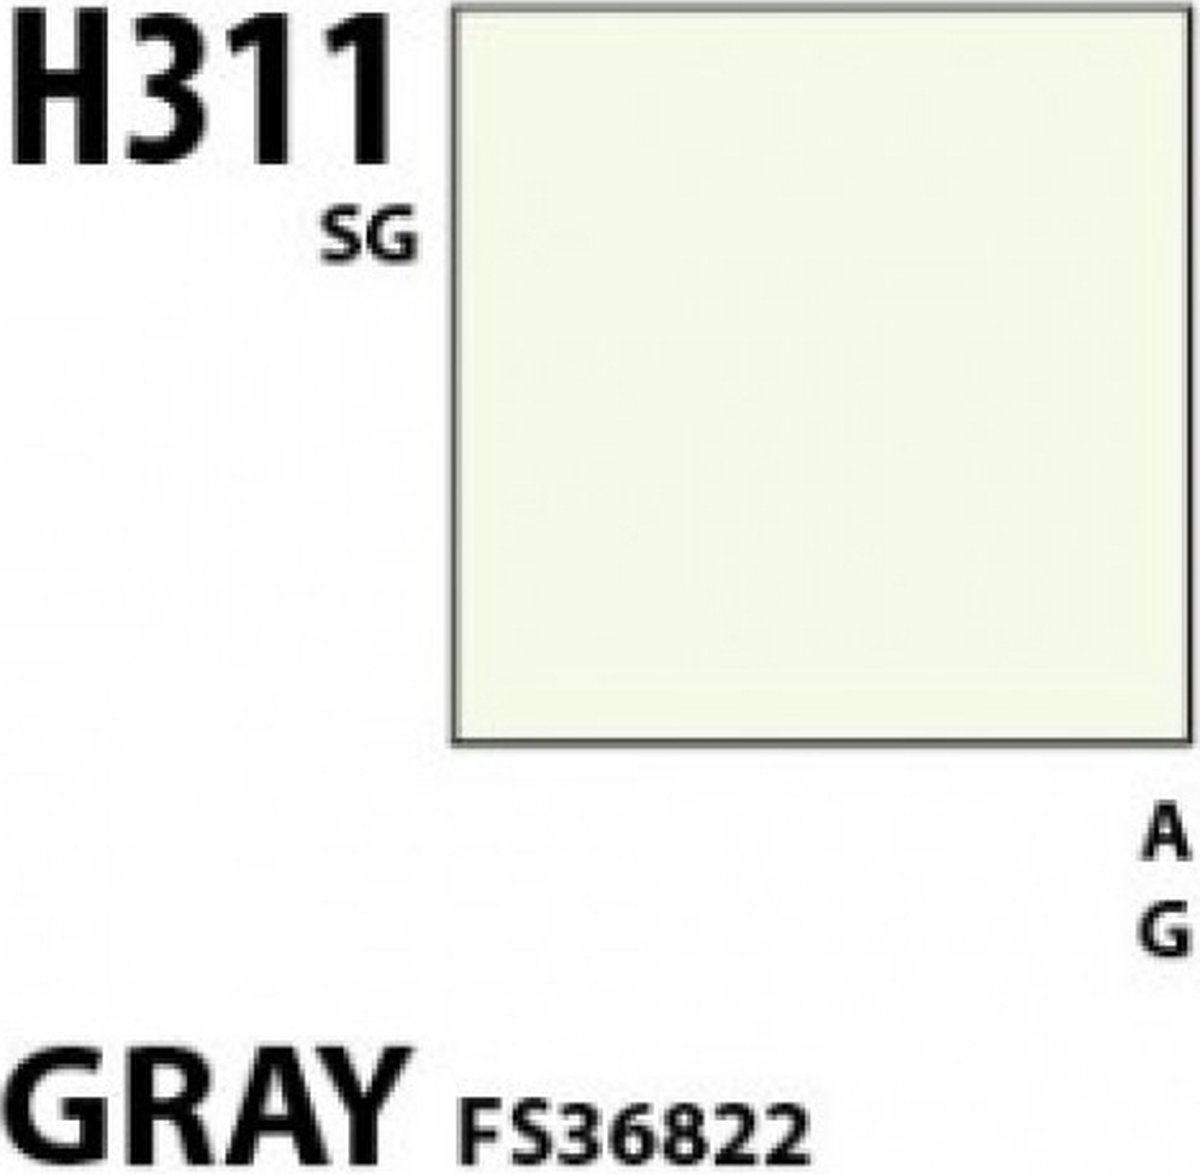 Mrhobby - Aqueous Hob. Col. 10 Ml Gray Fs 36622 (Mrh-h-311) - modelbouwsets, hobbybouwspeelgoed voor kinderen, modelverf en accessoires